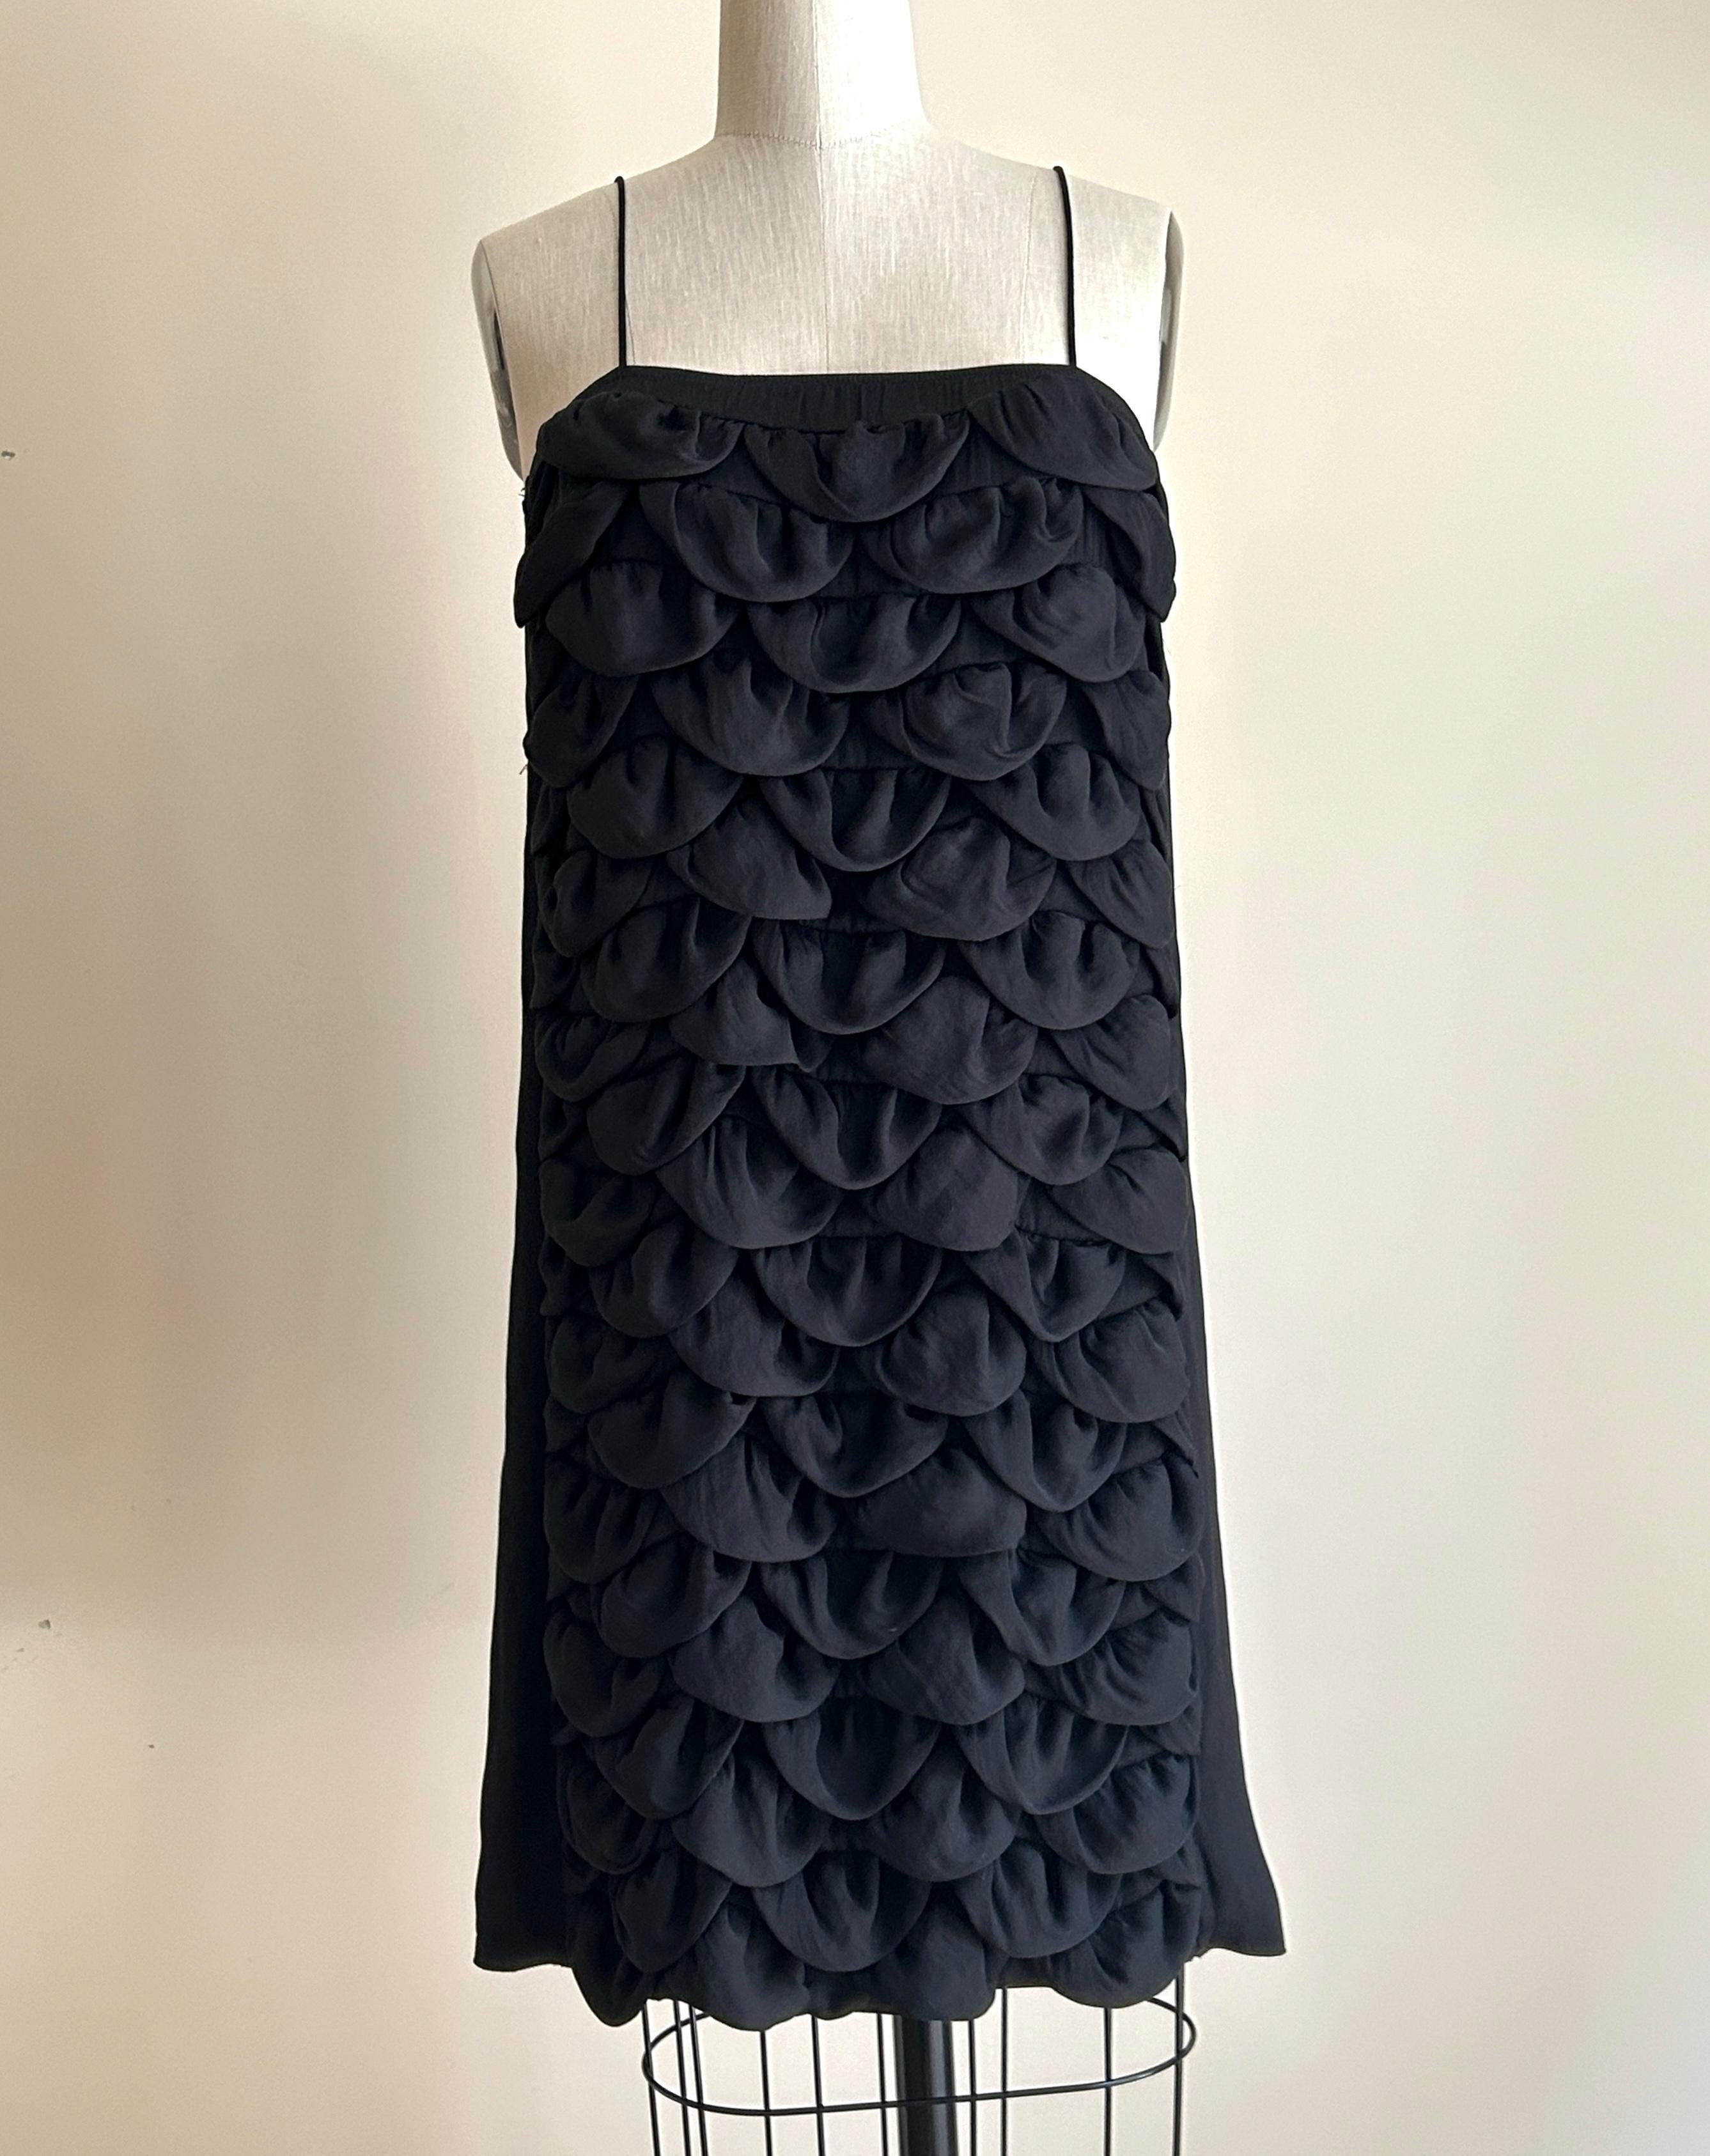 Schwarzes ärmelloses Chanel-Kleid im Vintage-Stil aus den 2000er Jahren mit blütenförmigen Stoffbahnen vorne. Aus der Kollektion Cruise 2009. CC-Logo aus Metall oben auf der Rückseite. 

Leichtes Material, ideal zum Überziehen am Strand oder am Pool